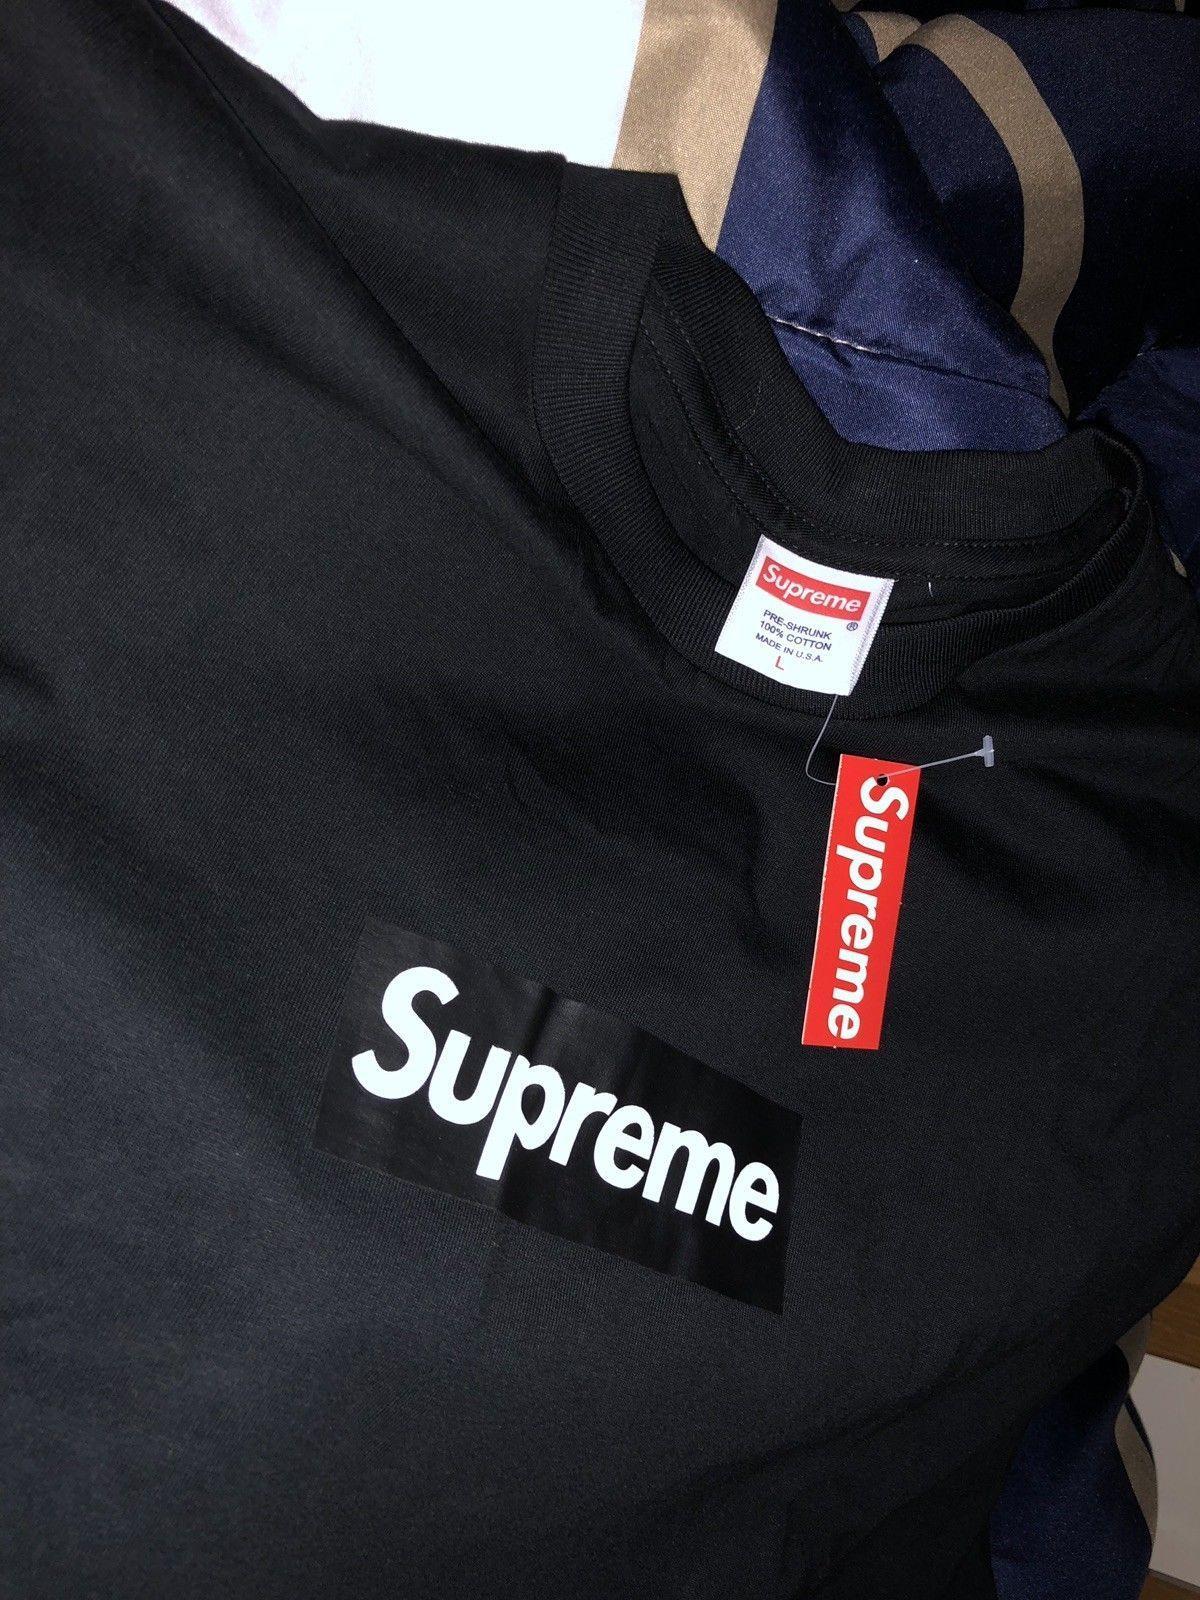 Purple BAPE Supreme Box Logo - Supreme Box Logo T Shirt Black Size L NEW W/ TAGS. Supreme, BAPE